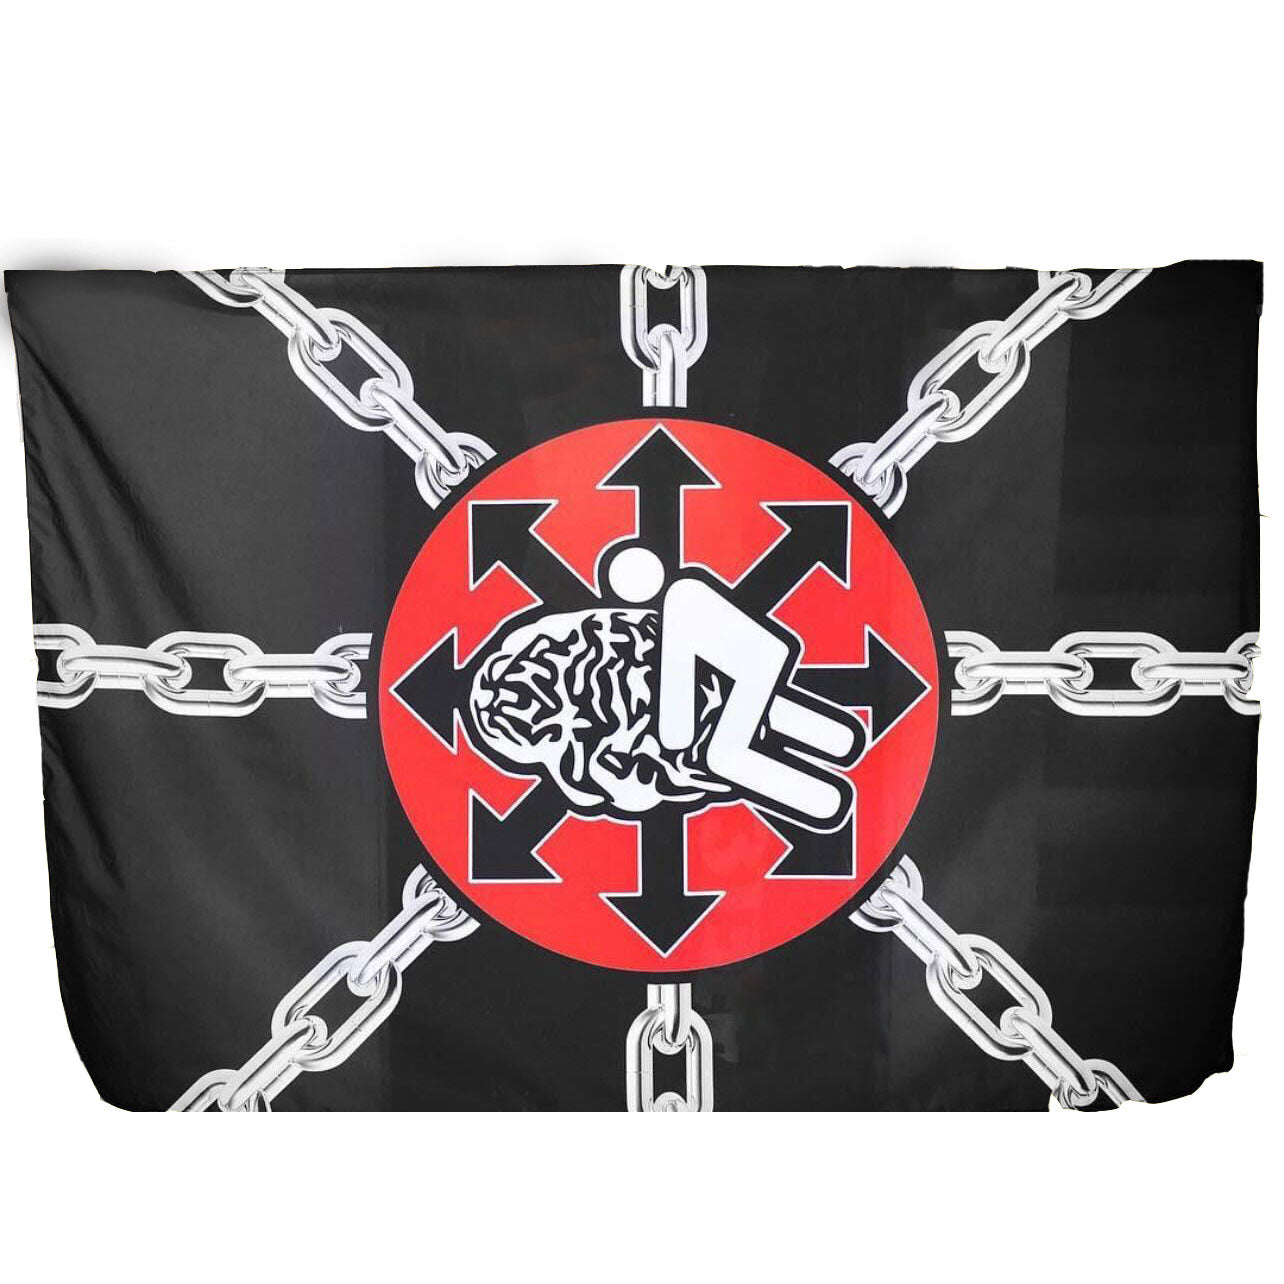 OMF Chain Flag